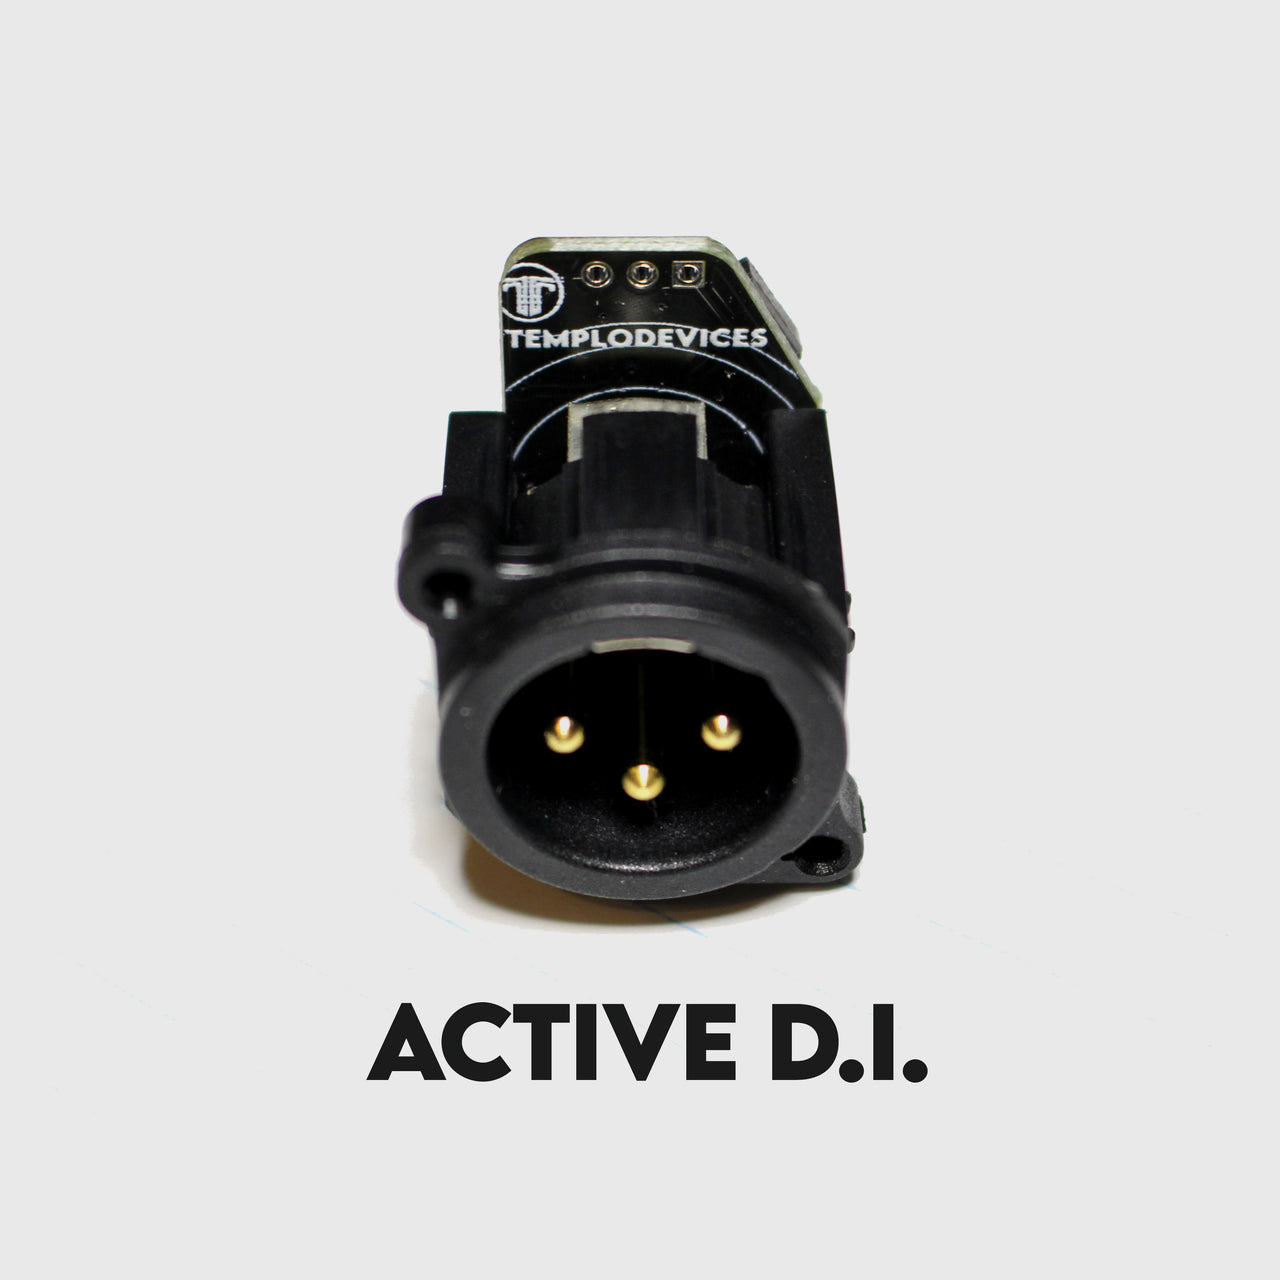 Active D.I. Module kit